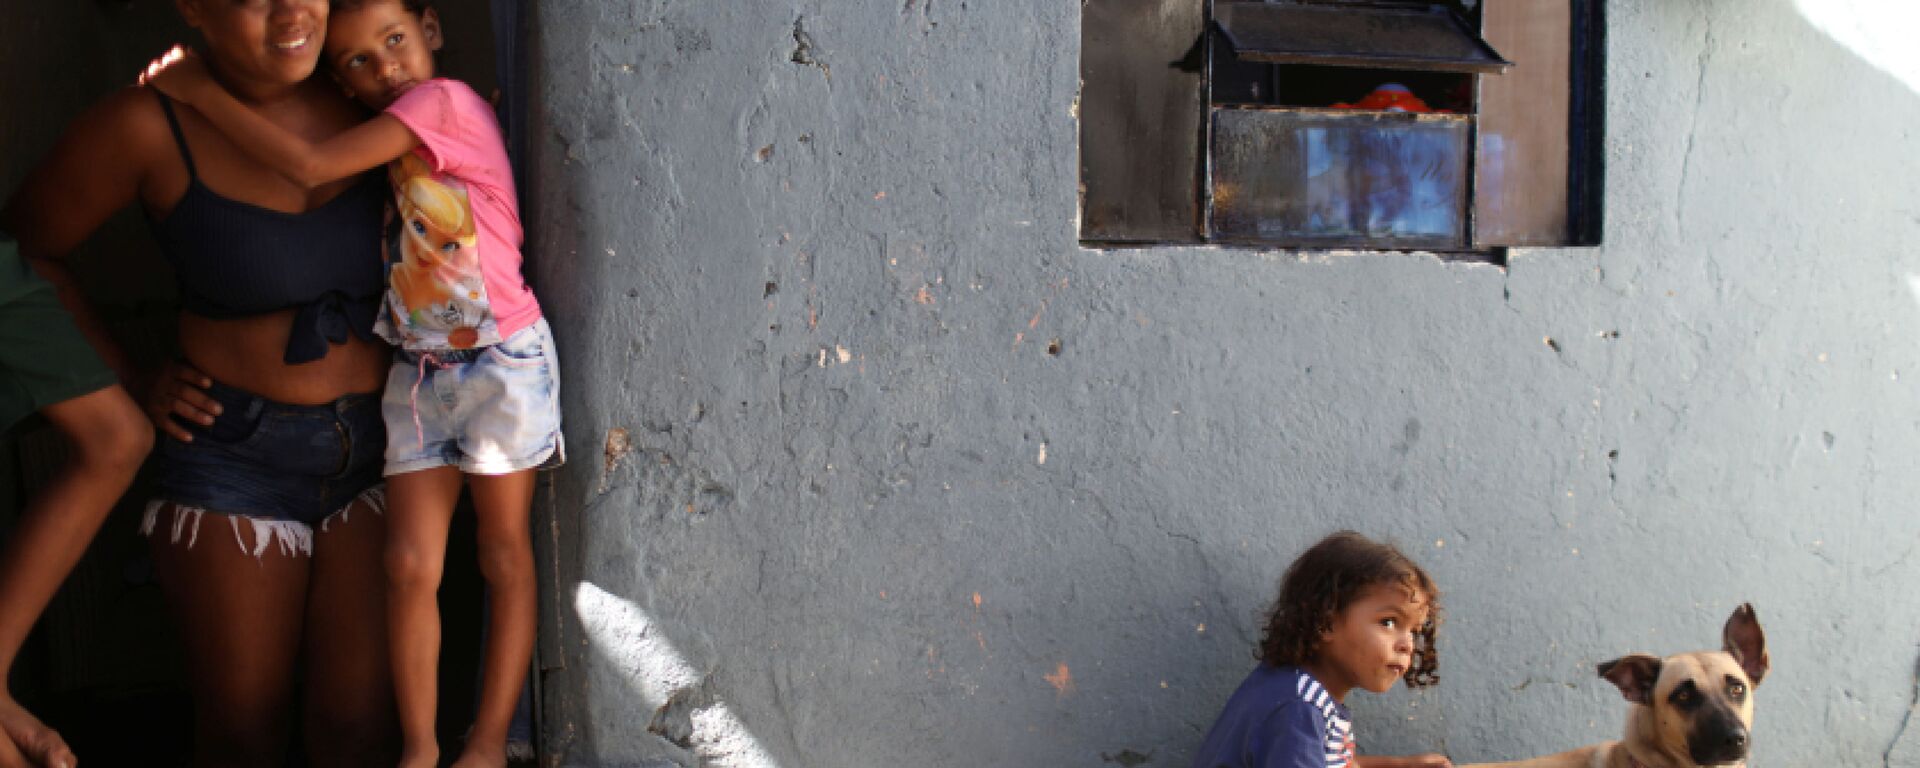 مونيك فيرناندا دي أسيس، 26 عامًا، تقف عند باب منزلها مع ابنتها إستير، حيث يلعب ابنها ميغيل مع كلبهم، بعد تلقي الطعام المتبرع به من مشروع Uma Mao Lava a Outra (يد واحدة تغسل الأخرى) خلال جائحة كورونا (كوفيد-19) في نيلوبوليس، ولاية ريو دي جانيرو، البرازيل، 6 أبريل 2021 - سبوتنيك عربي, 1920, 17.09.2021